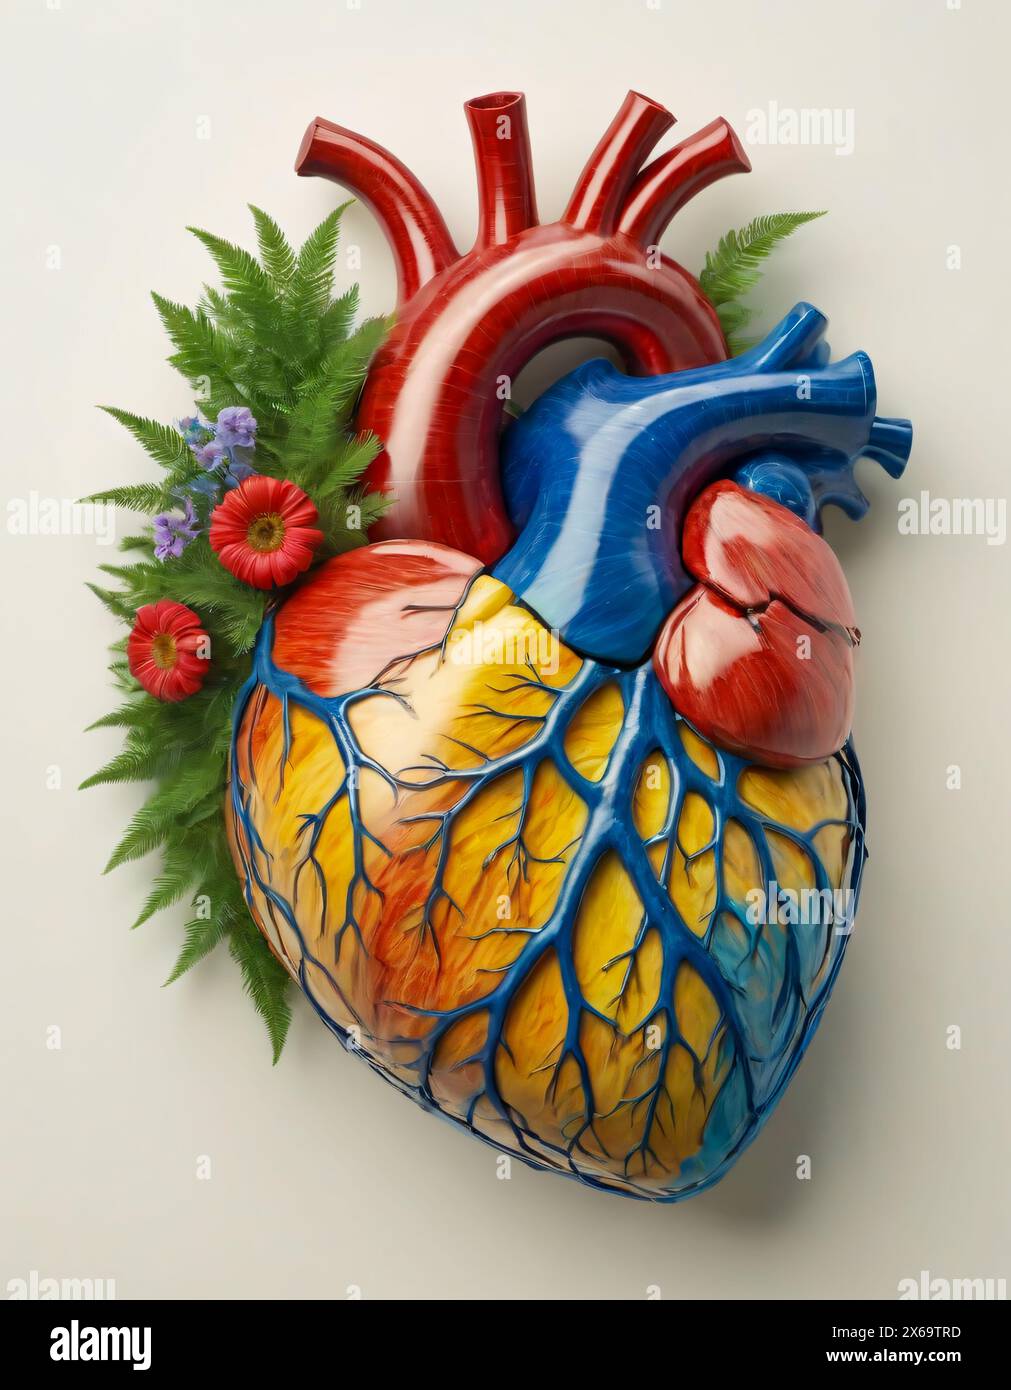 Menschliches Herz, realistische Darstellung. Keramikblumen und Farne Stockfoto